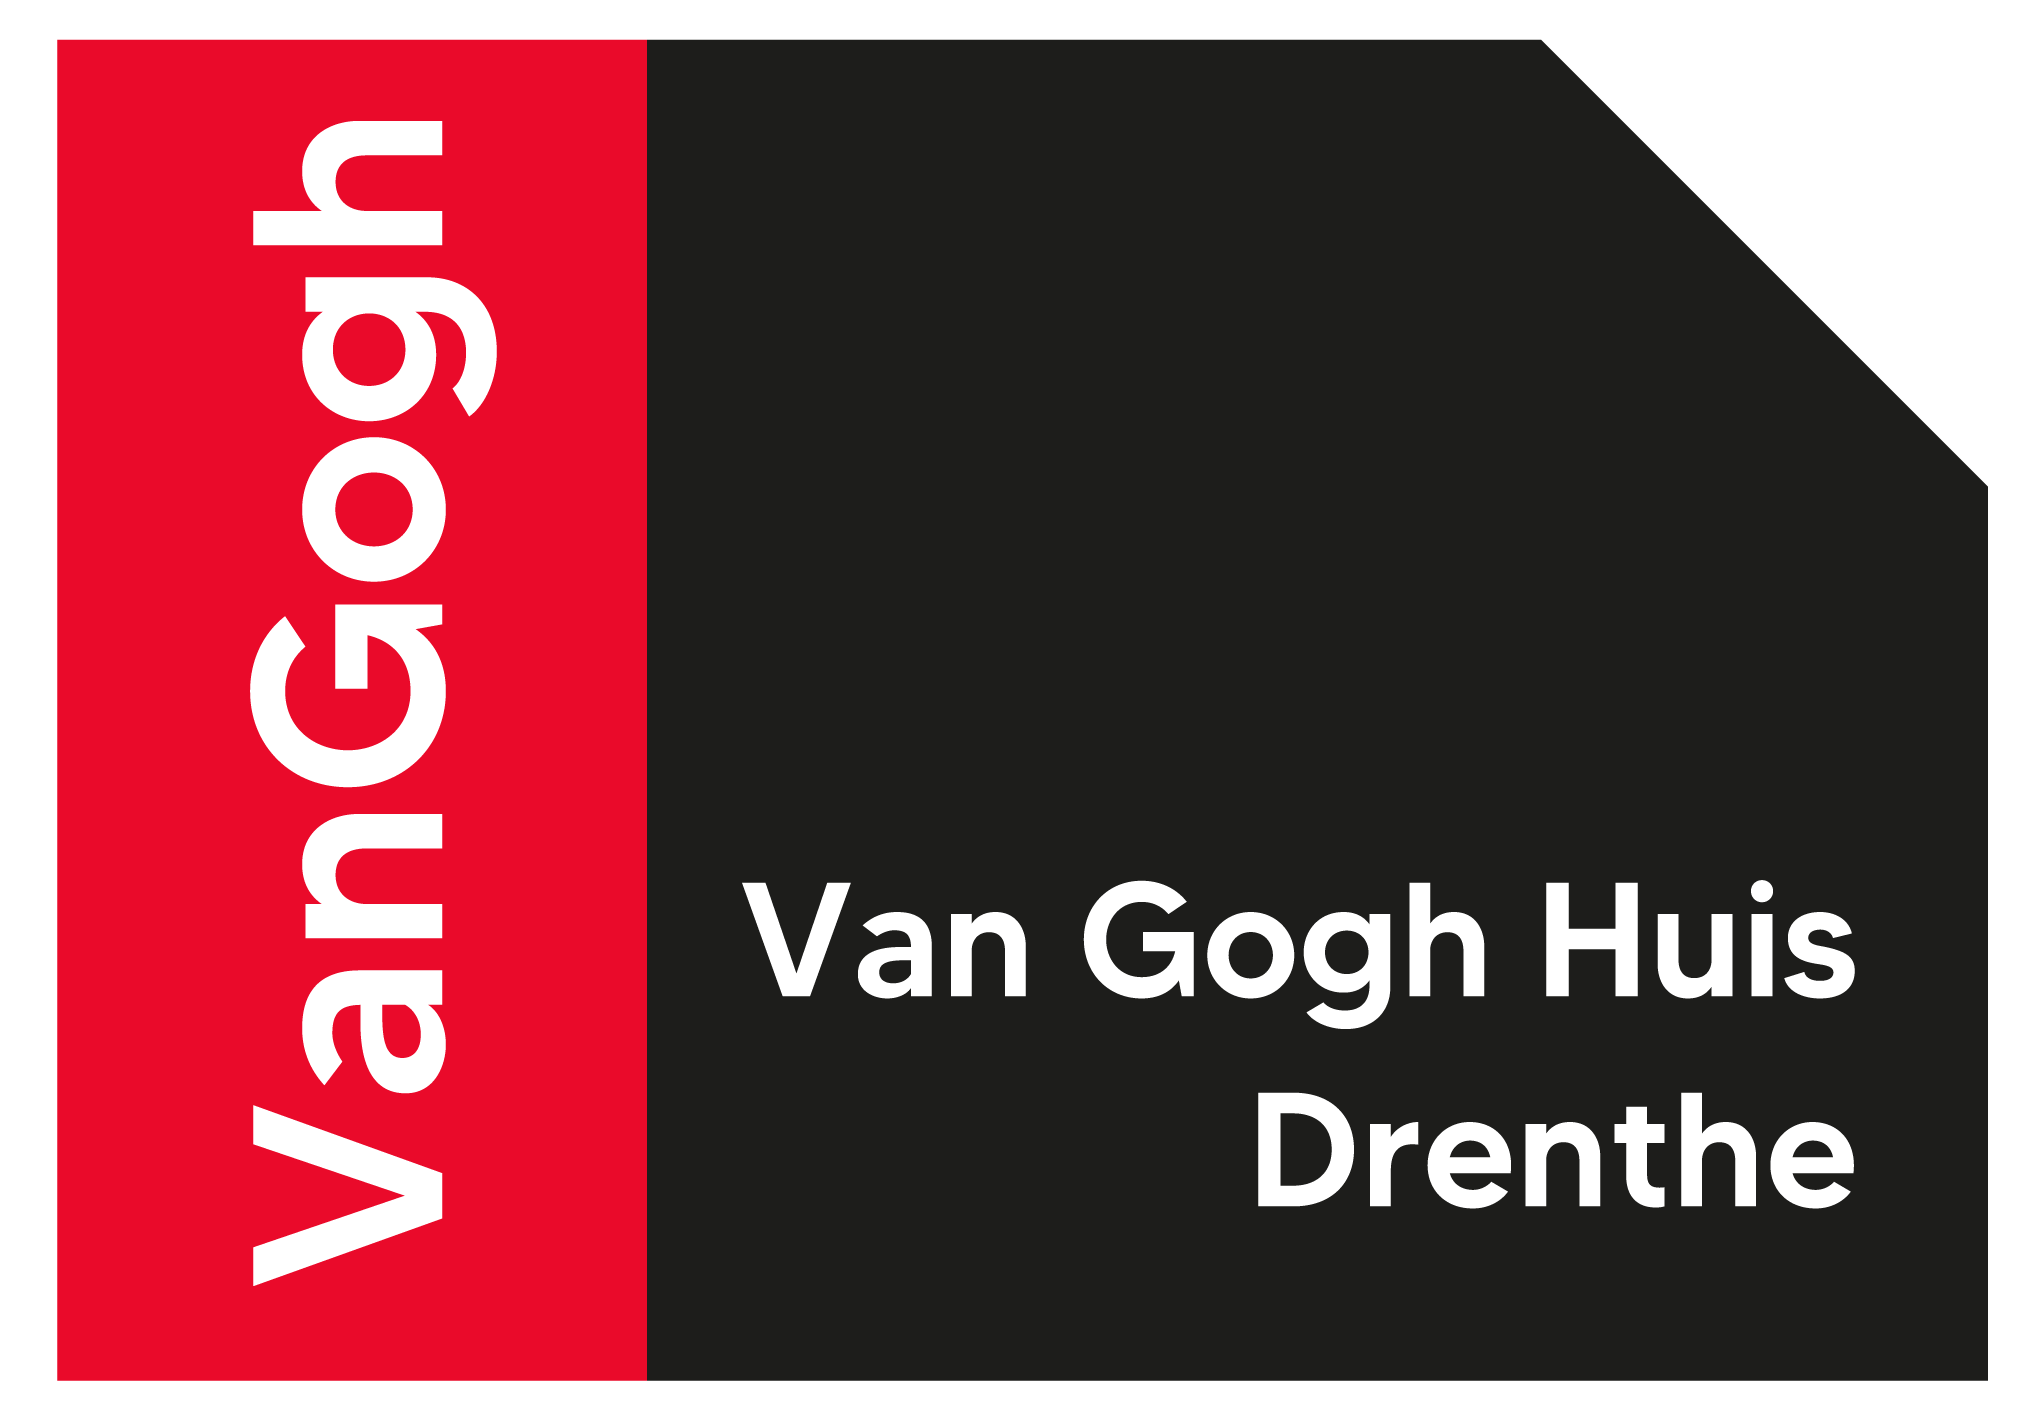 Van Gogh Huis Drenthe